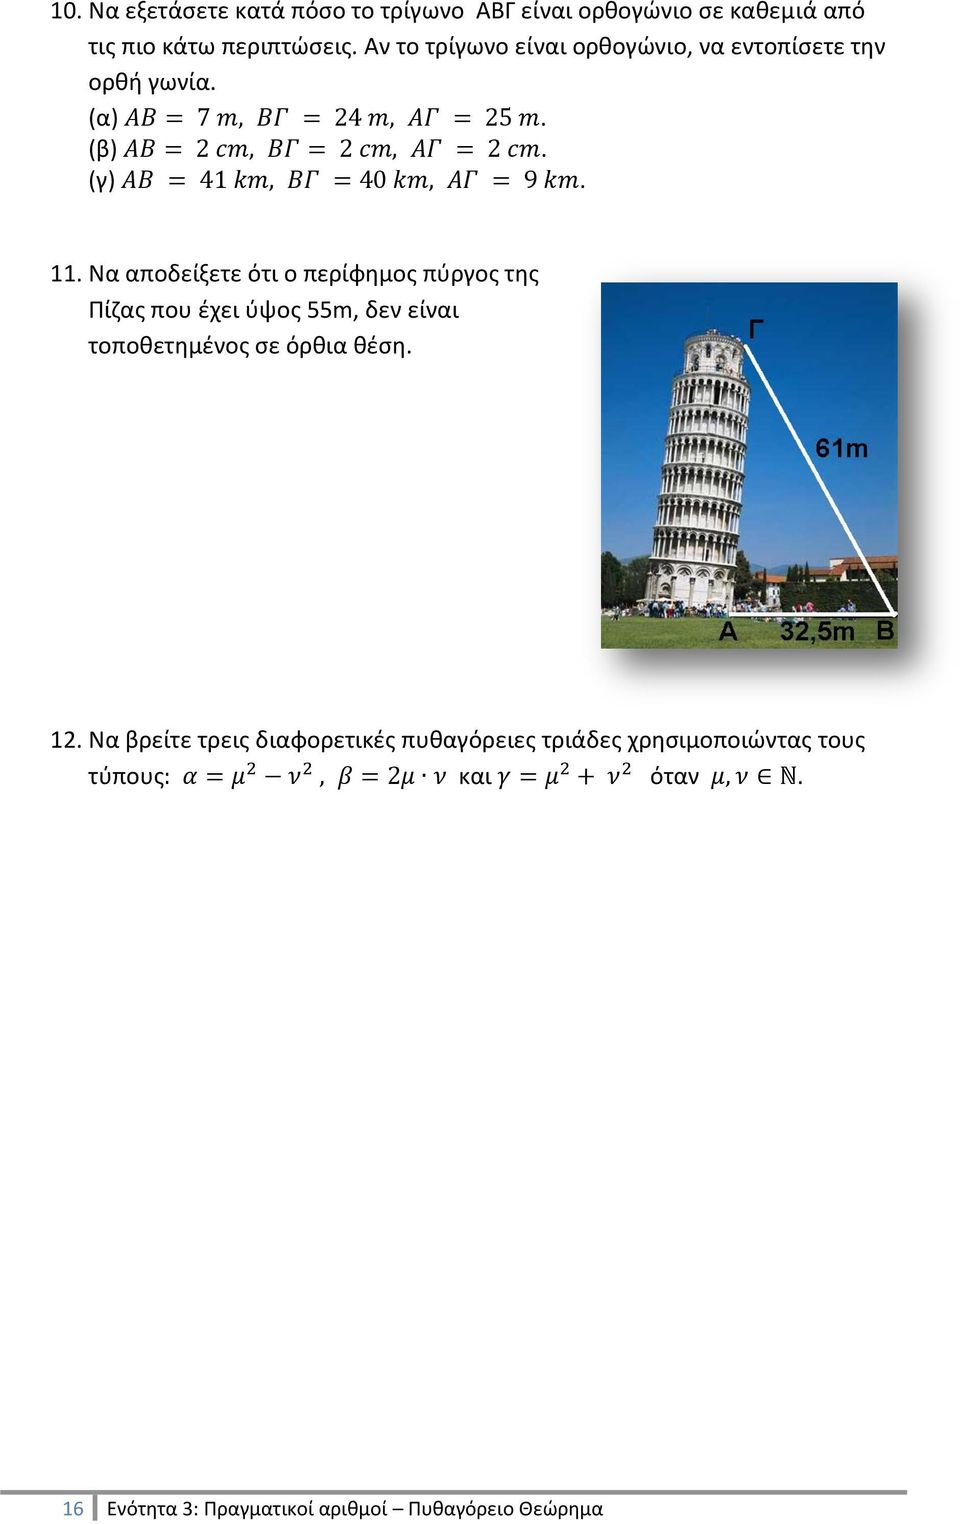 Να αποδείξετε ότι ο περίφημος πύργος της Πίζας που έχει ύψος 55m, δεν είναι τοποθετημένος σε όρθια θέση.